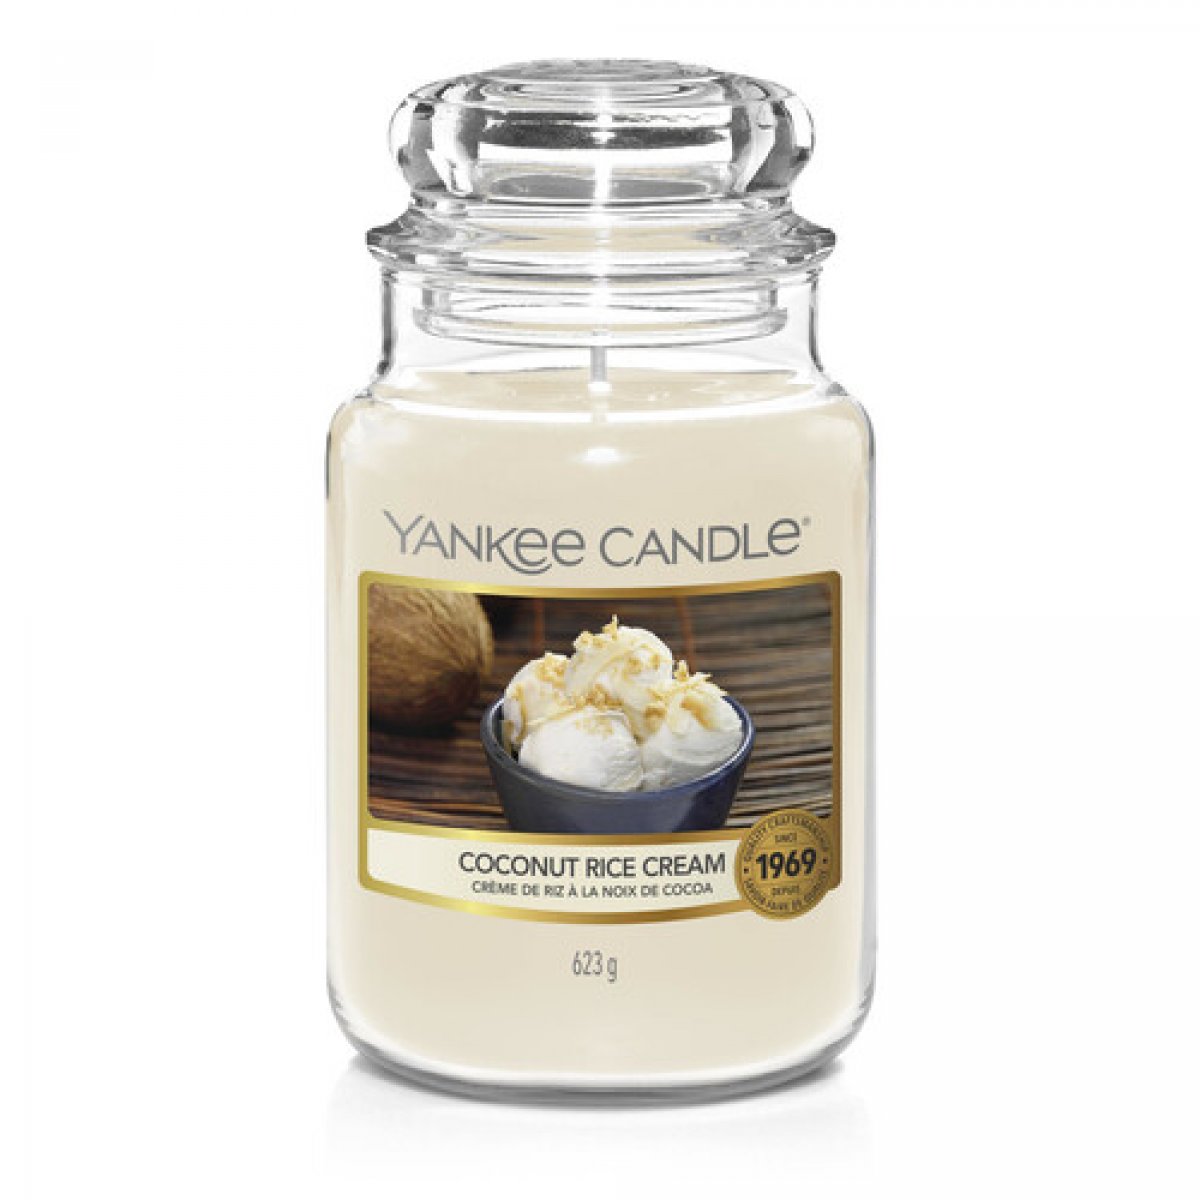 Giara grande Yankee Candle Coconut Rice Cream Fragranza dolce speziata